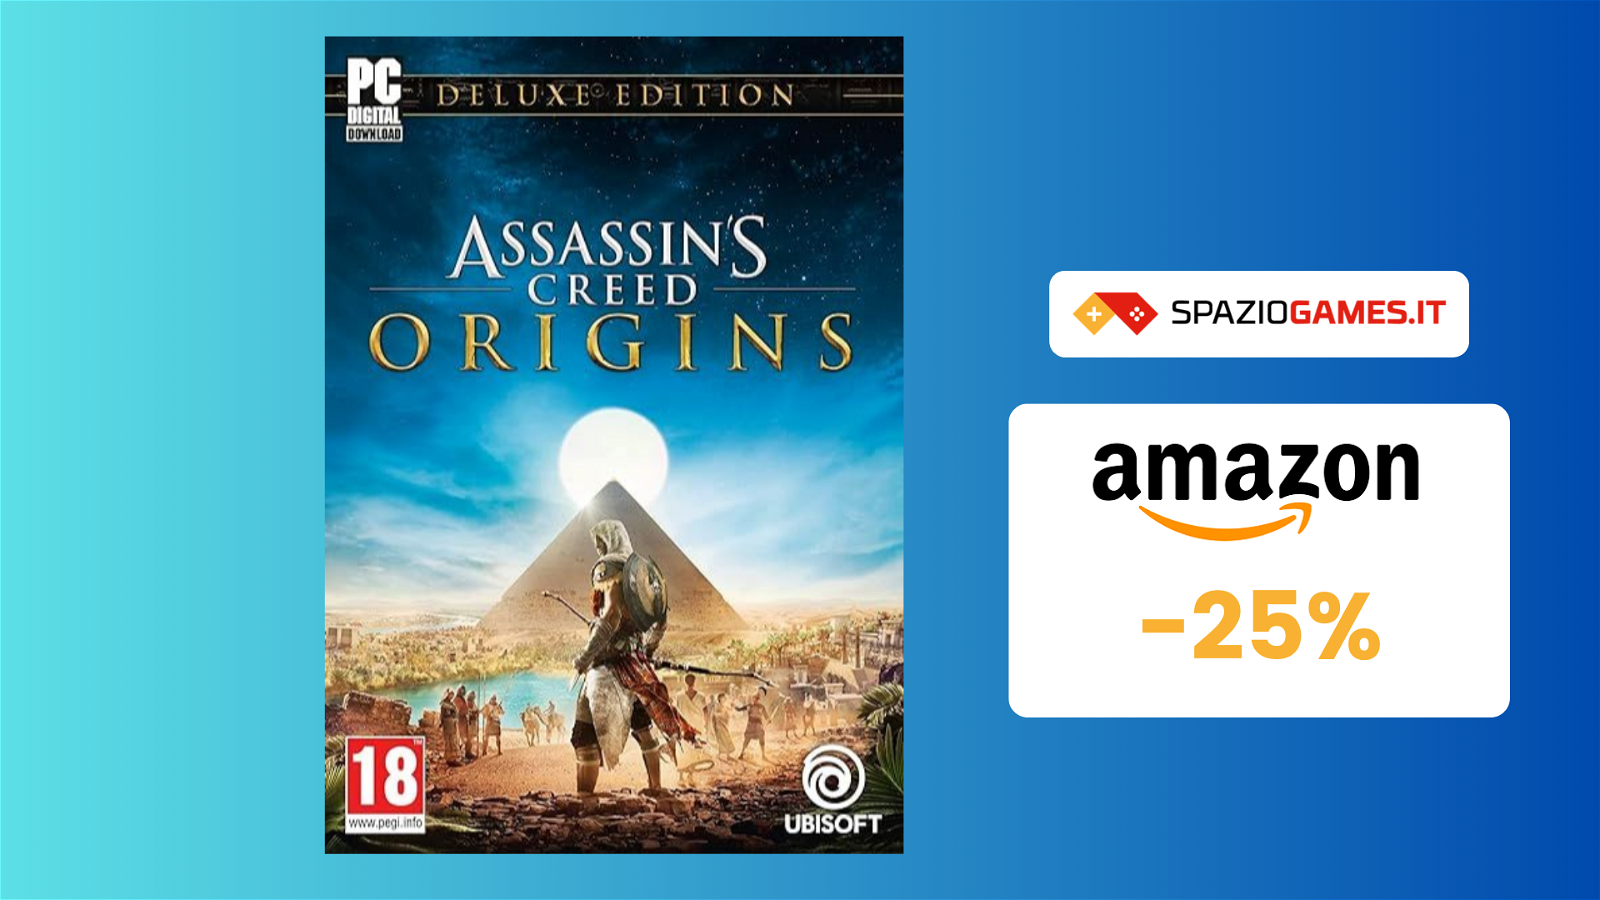 Assassin's Creed Origins - Deluxe Edition per PC a SOLO 11€!